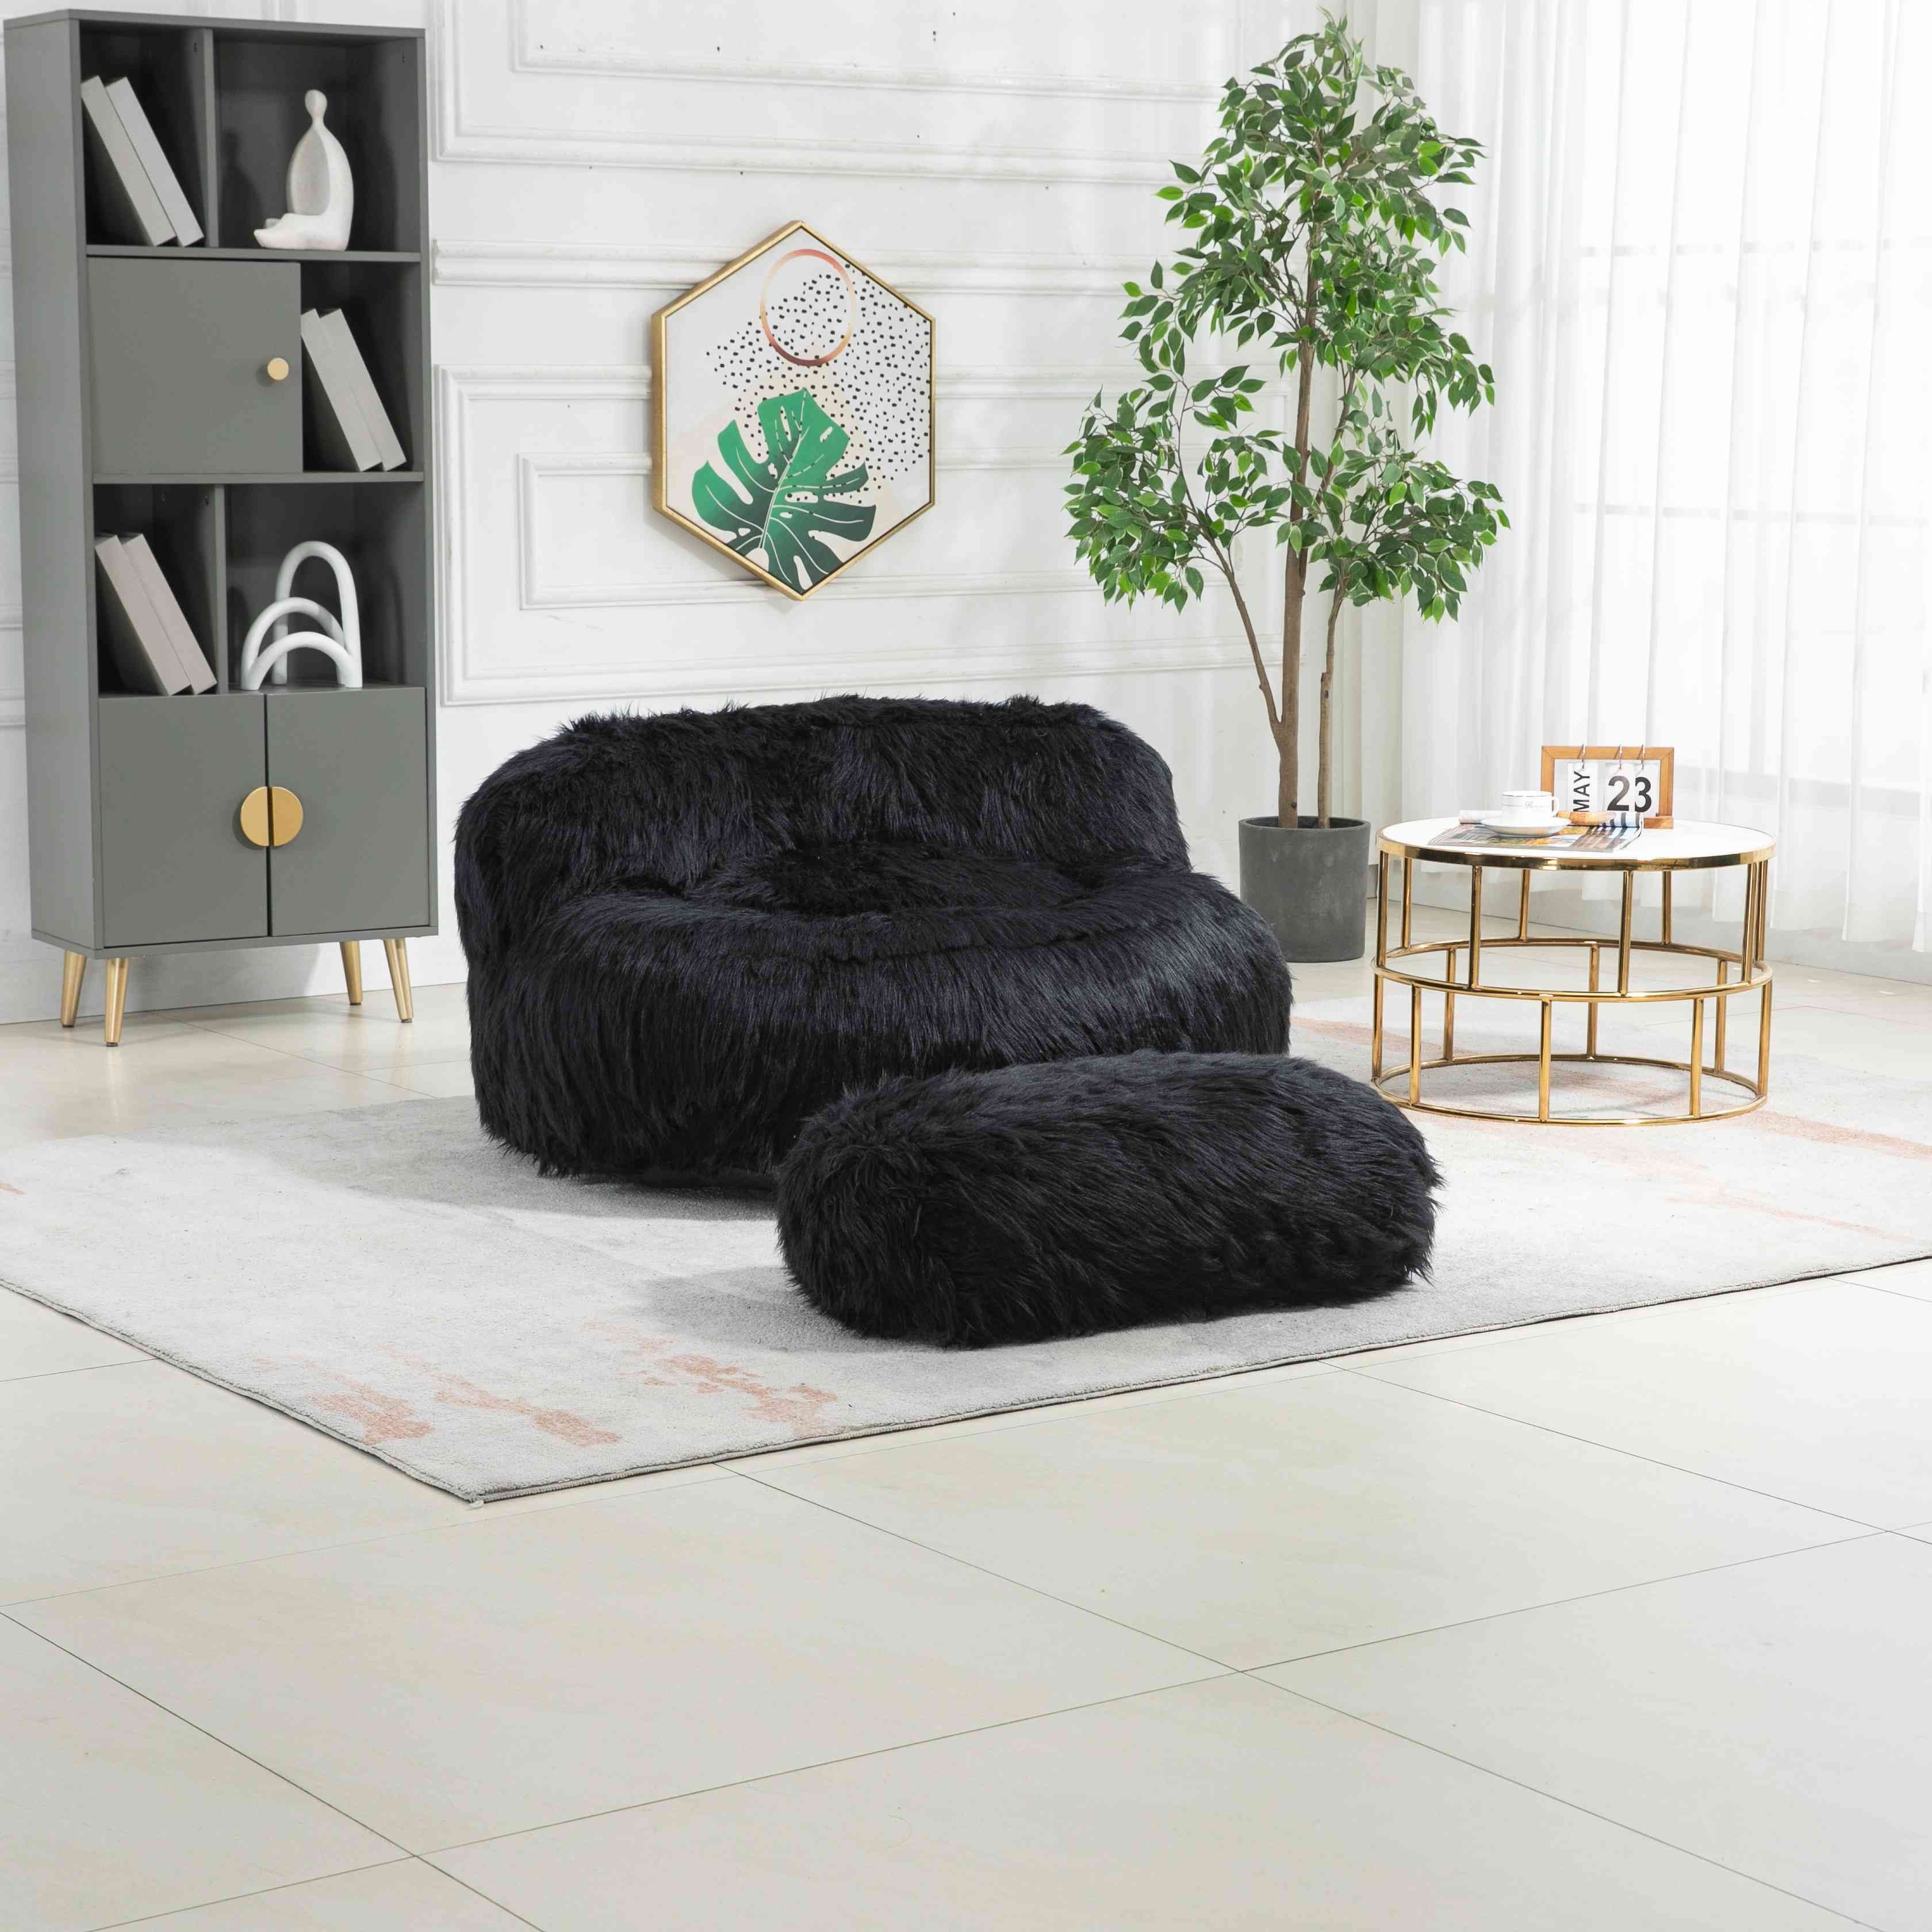 IDEASY Sitzsack Plüsch-Sitzsack-Stuhl, extra großer flauschiger Deko-Hocker (mit Fußstütze, Memory-Schaumstoff-Polsterung), für Wohnzimmer, Wohnung, Schlafzimmer, Heimbüro